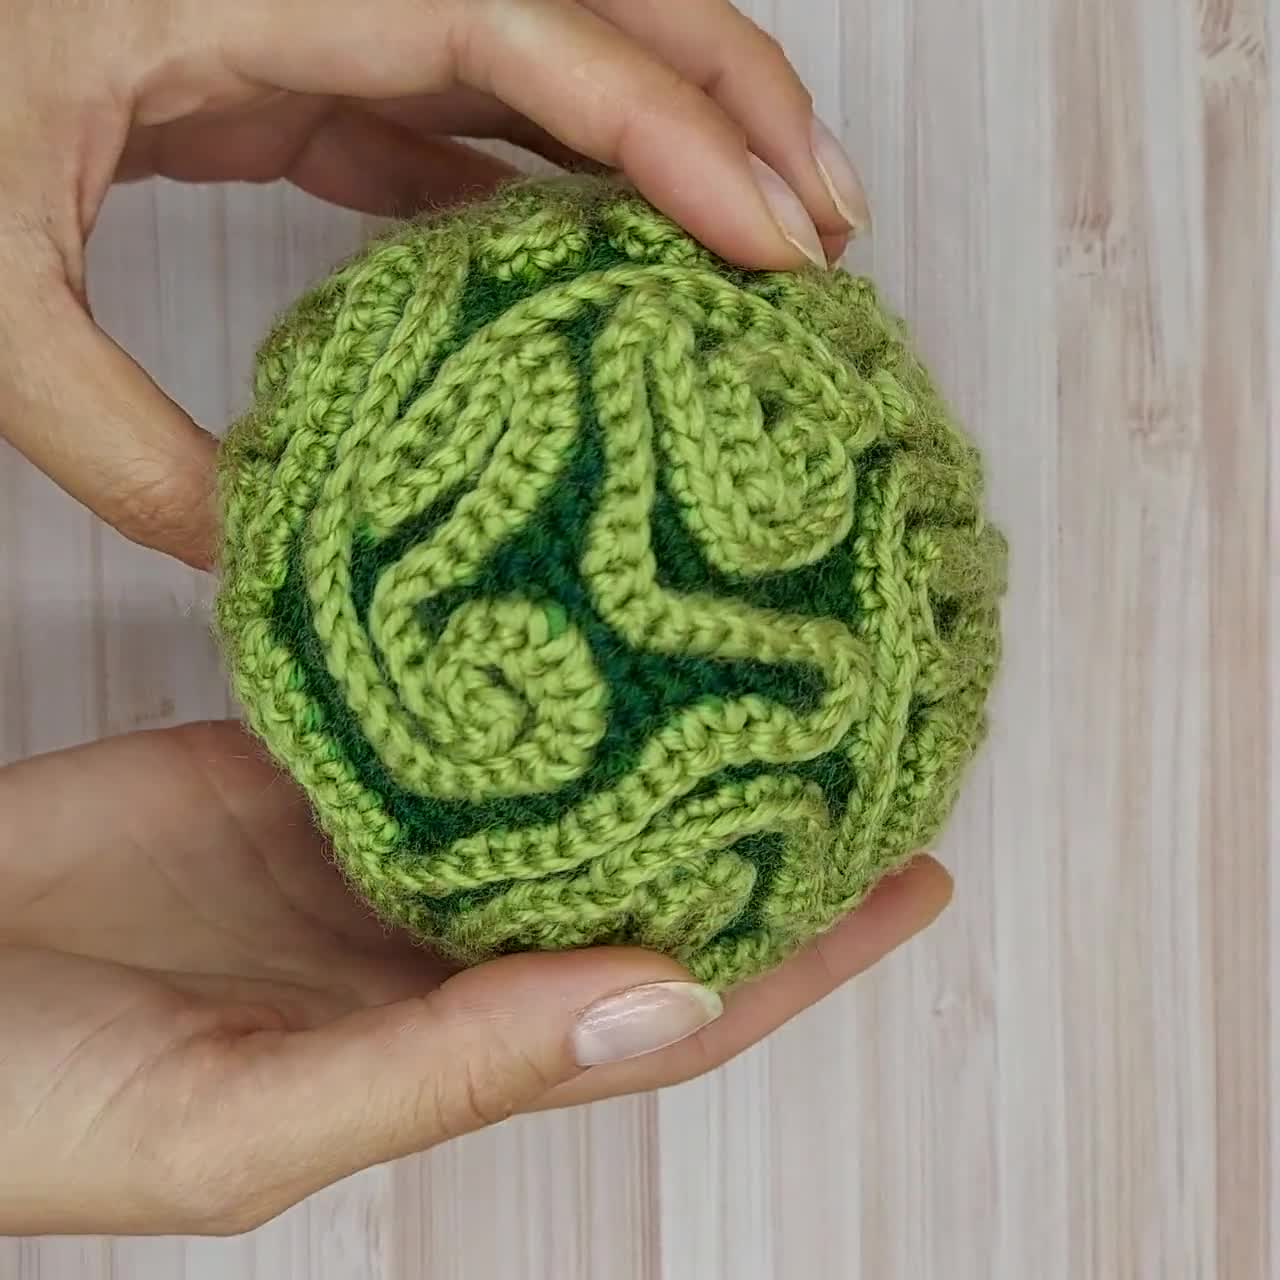 Ravelry: Crochet Landscape Rings pattern by Wool Bags